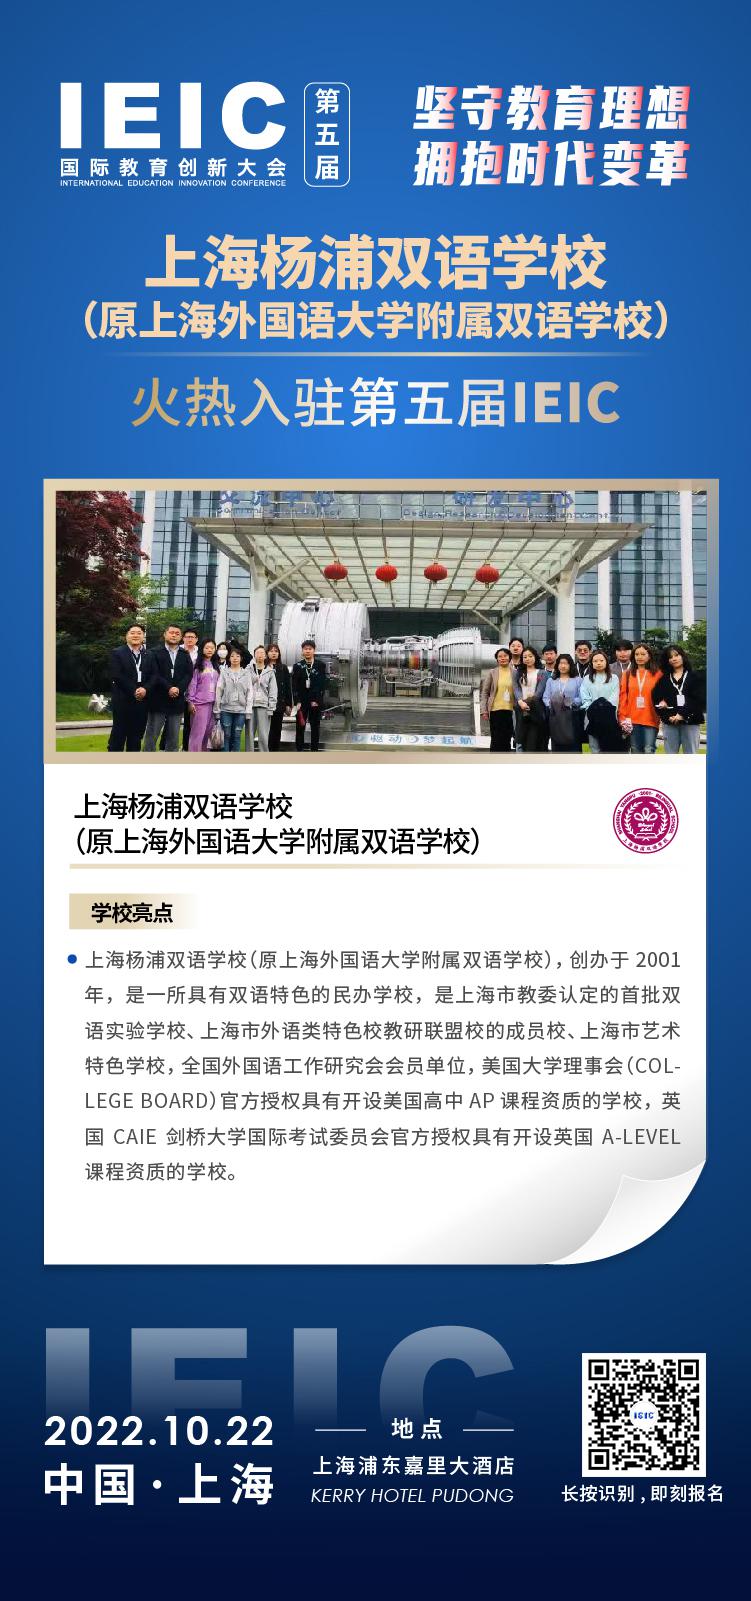 上海杨浦双语学校成功入驻参加2022年远播第五届IEIC国际教育创新大会